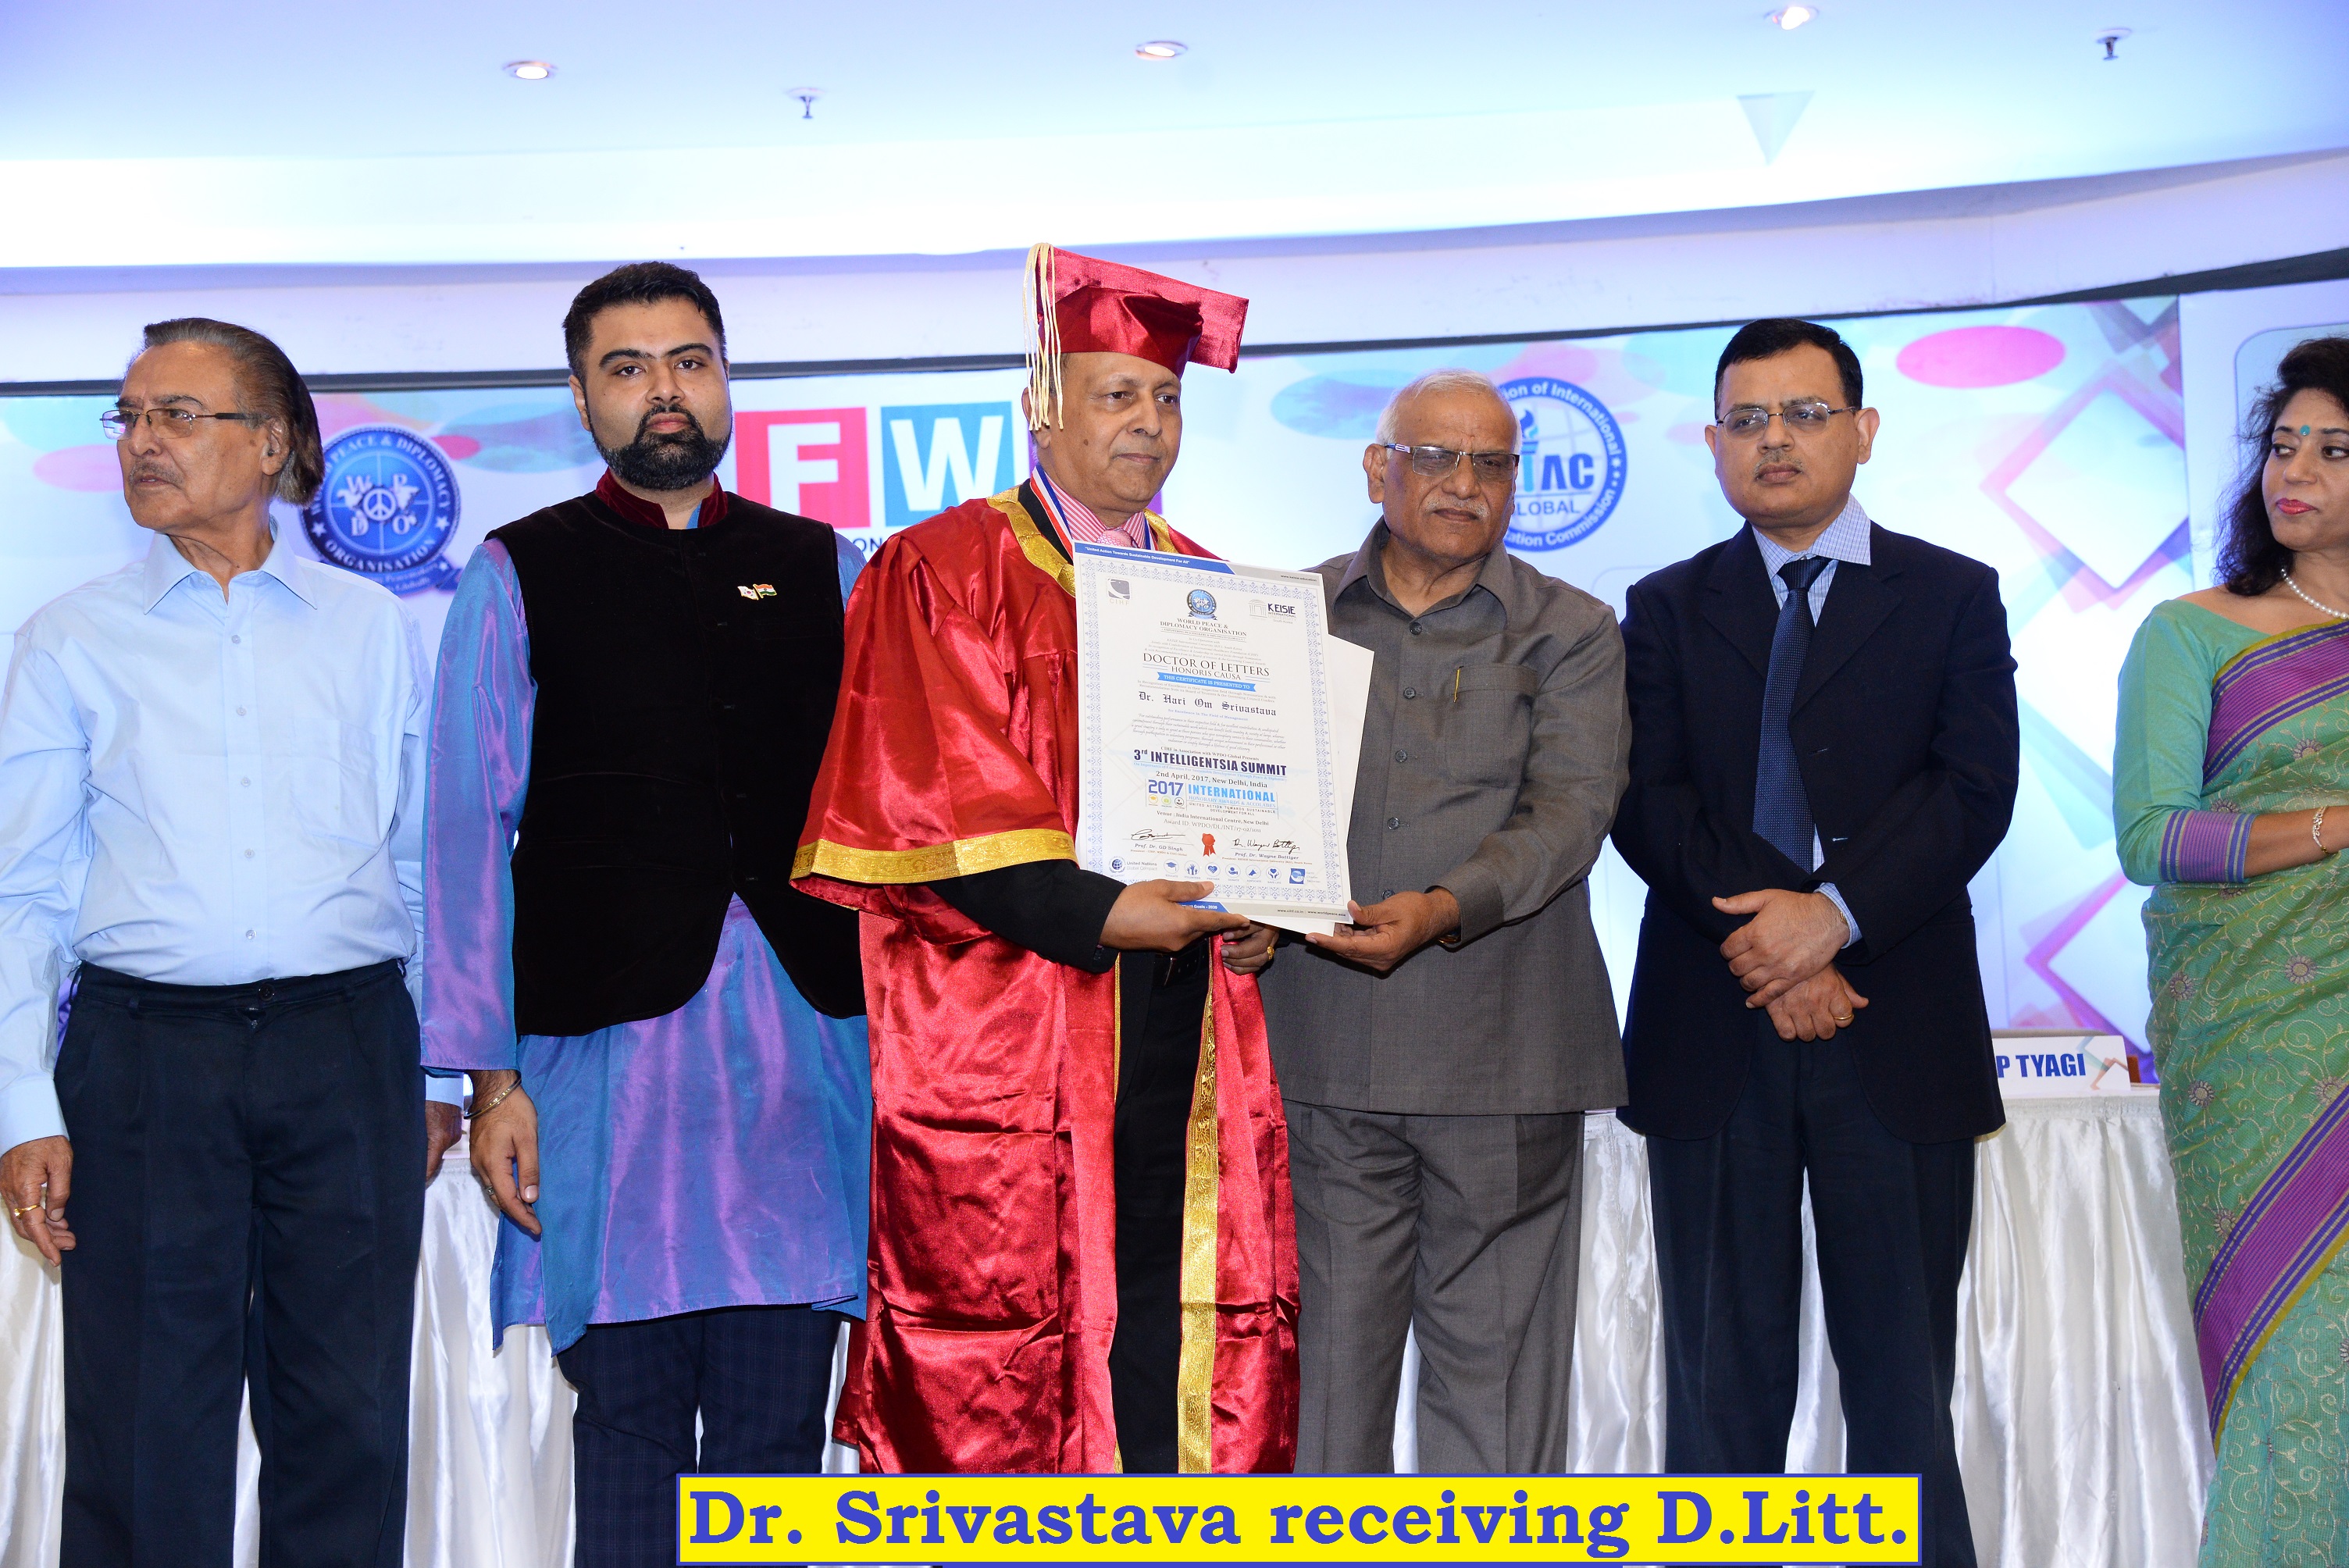 Dr. H. O. Srivastava receiving D.Litt degree